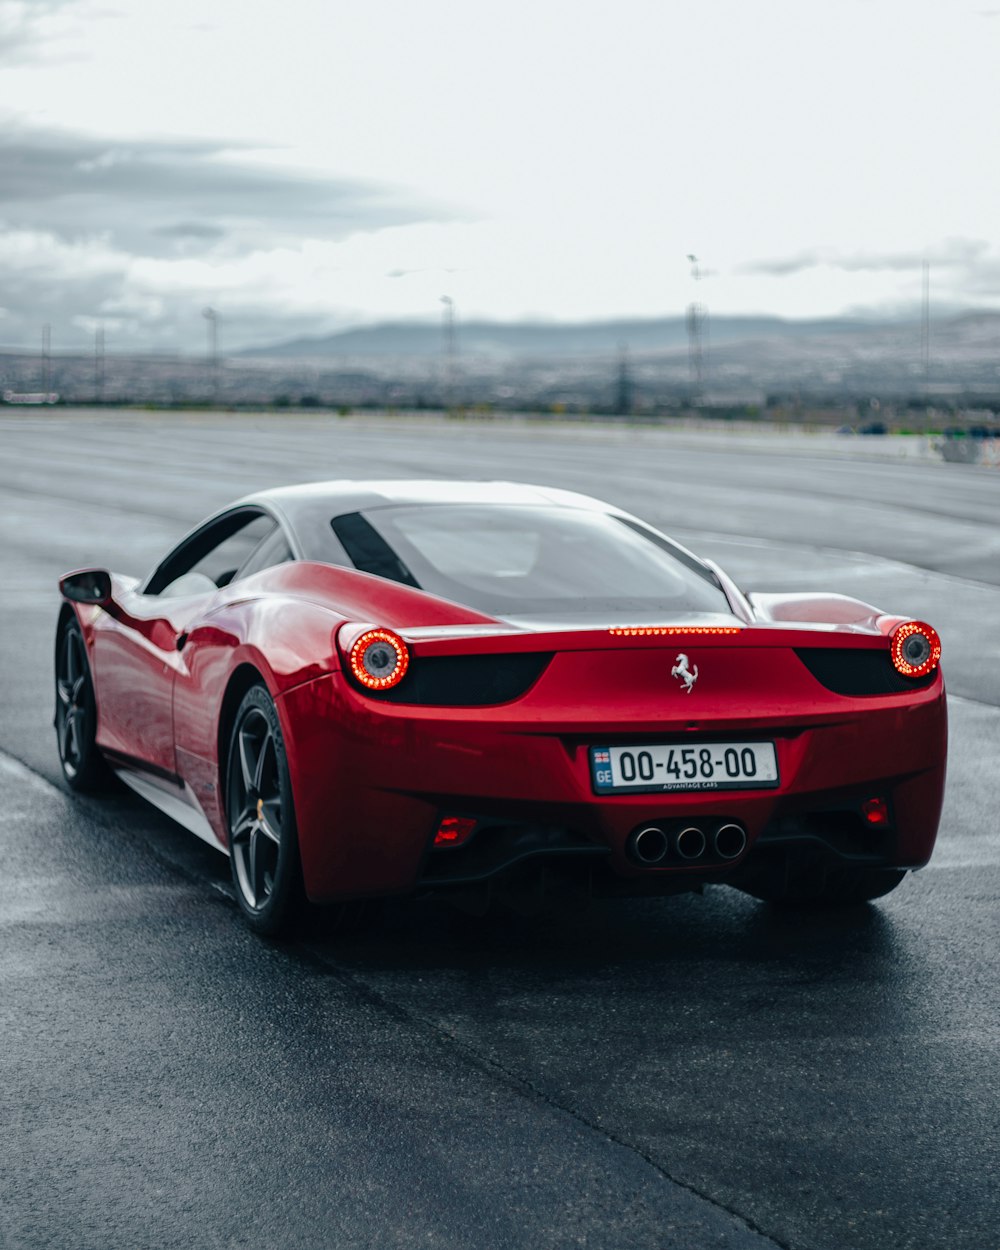 Un deportivo Ferrari rojo conduciendo por una carretera